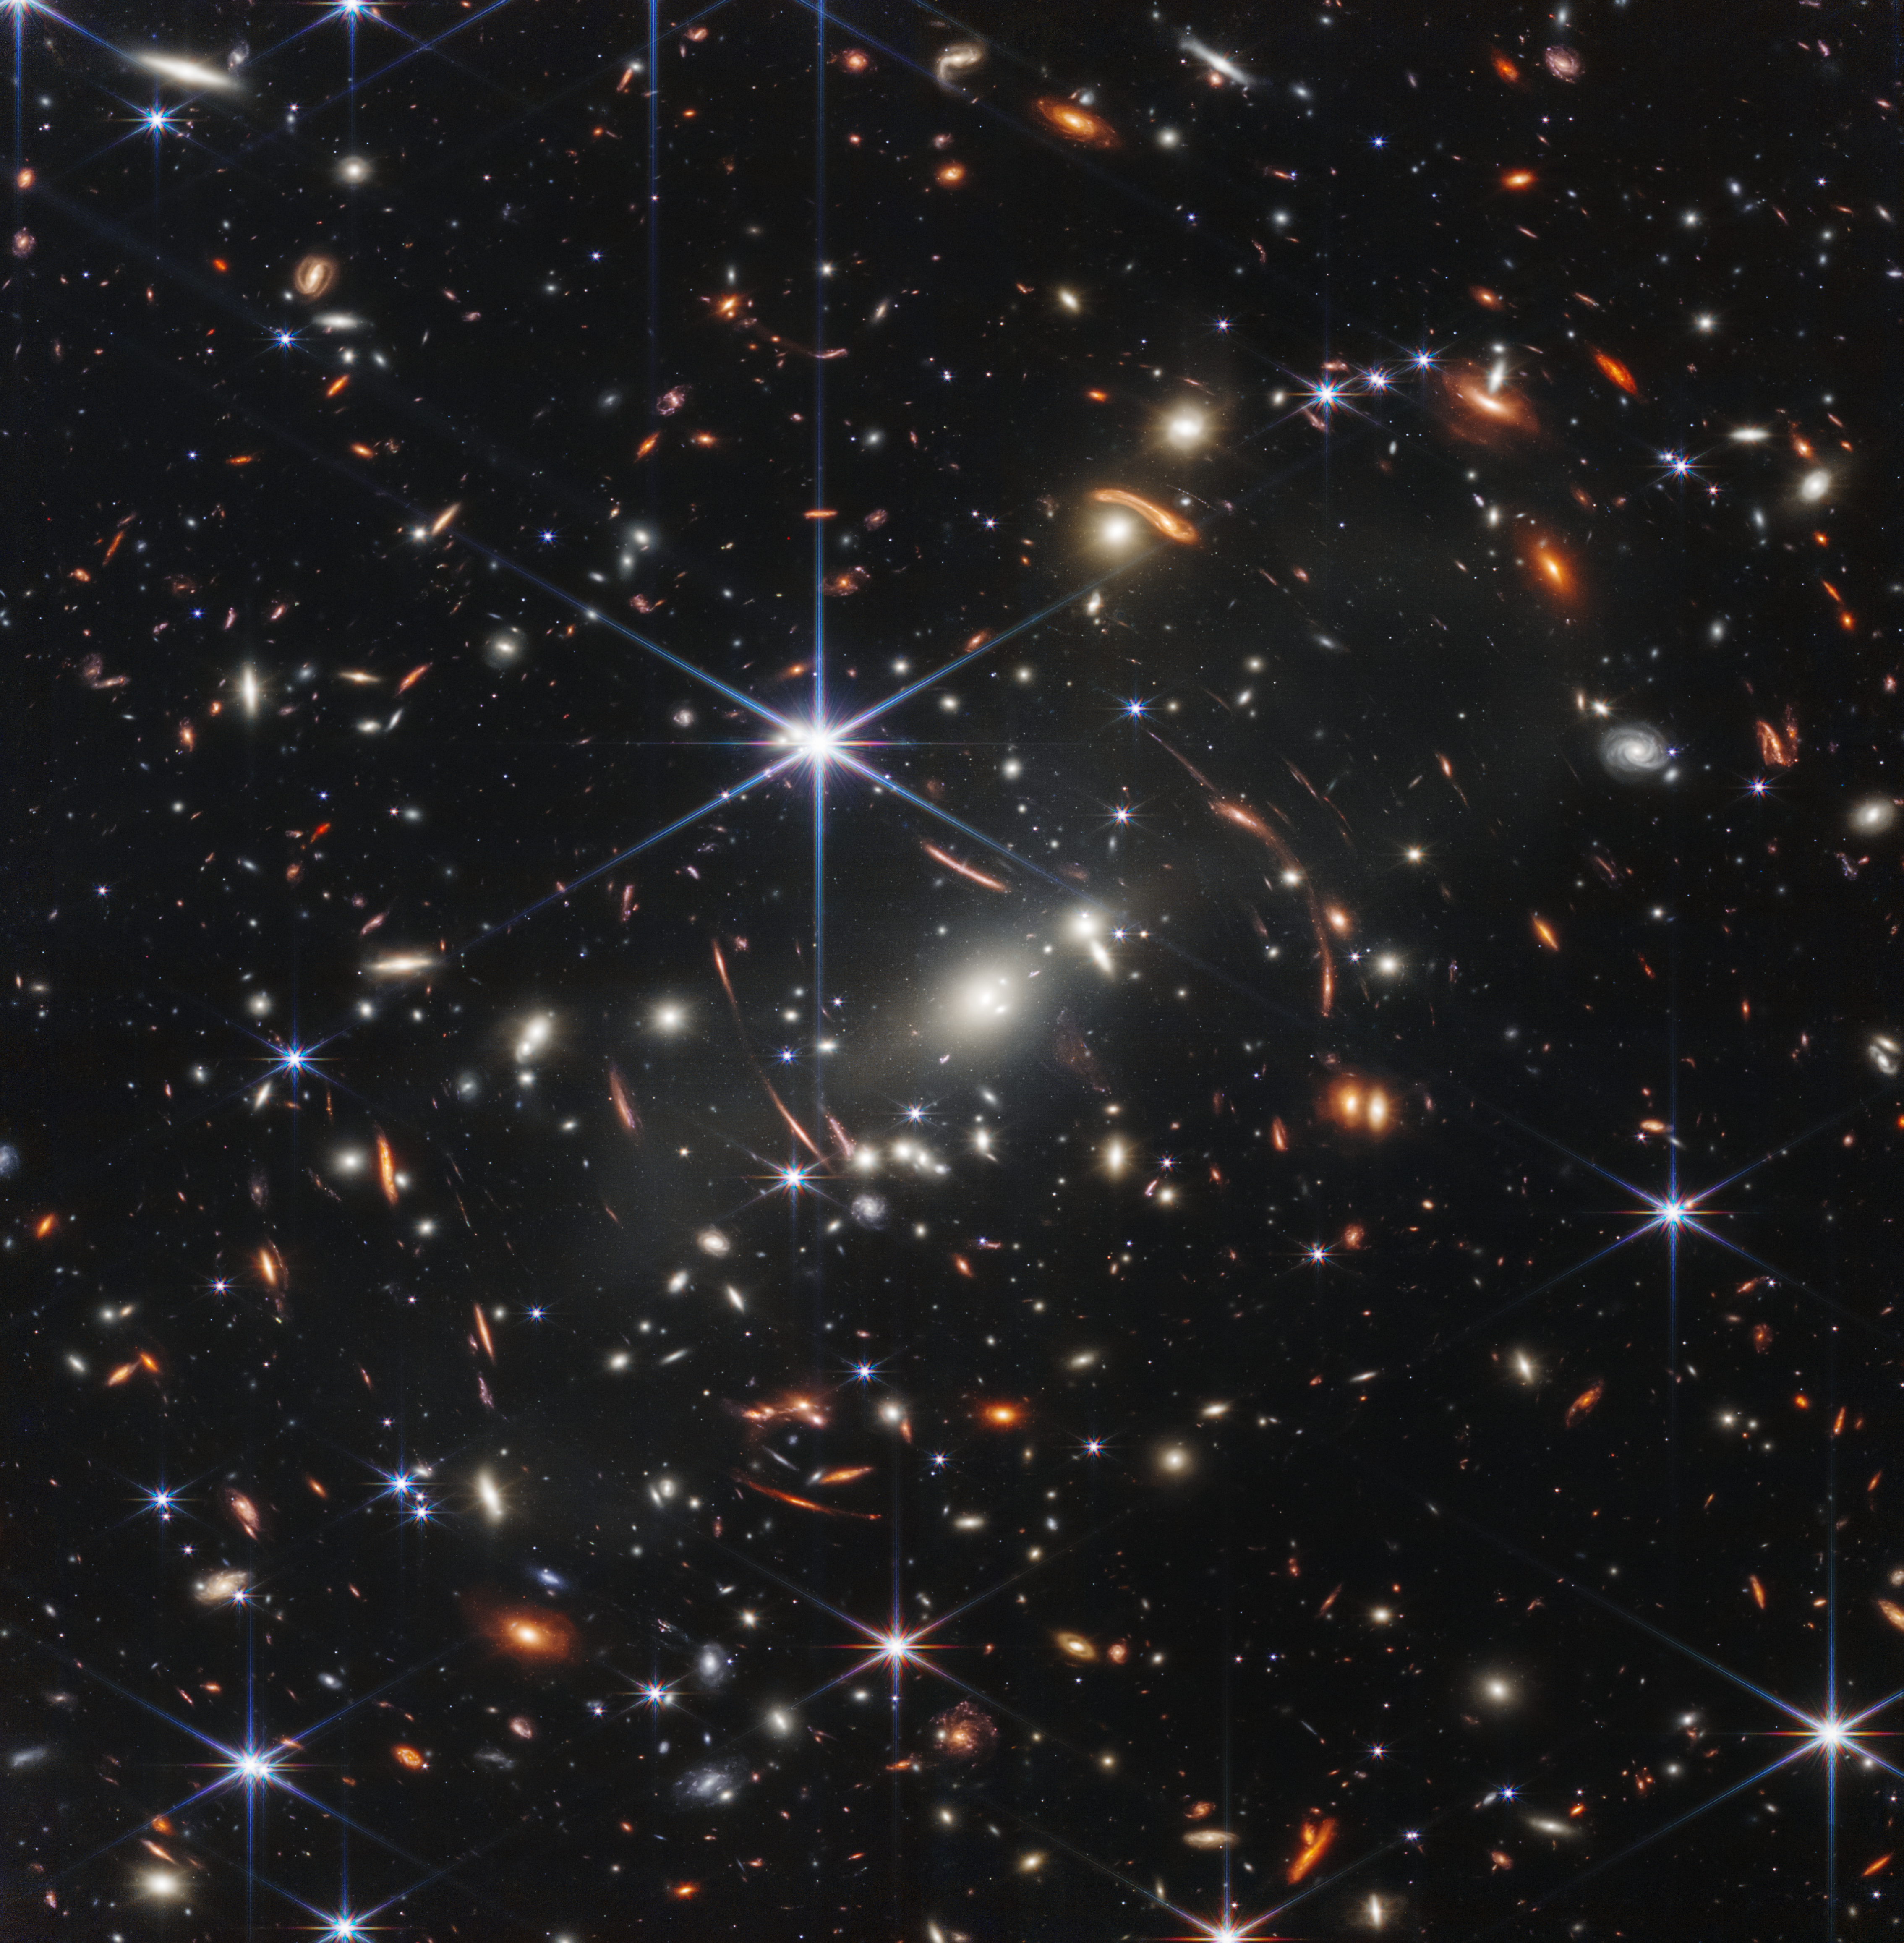 La prima spettacolare immagine del James Webb Telescope